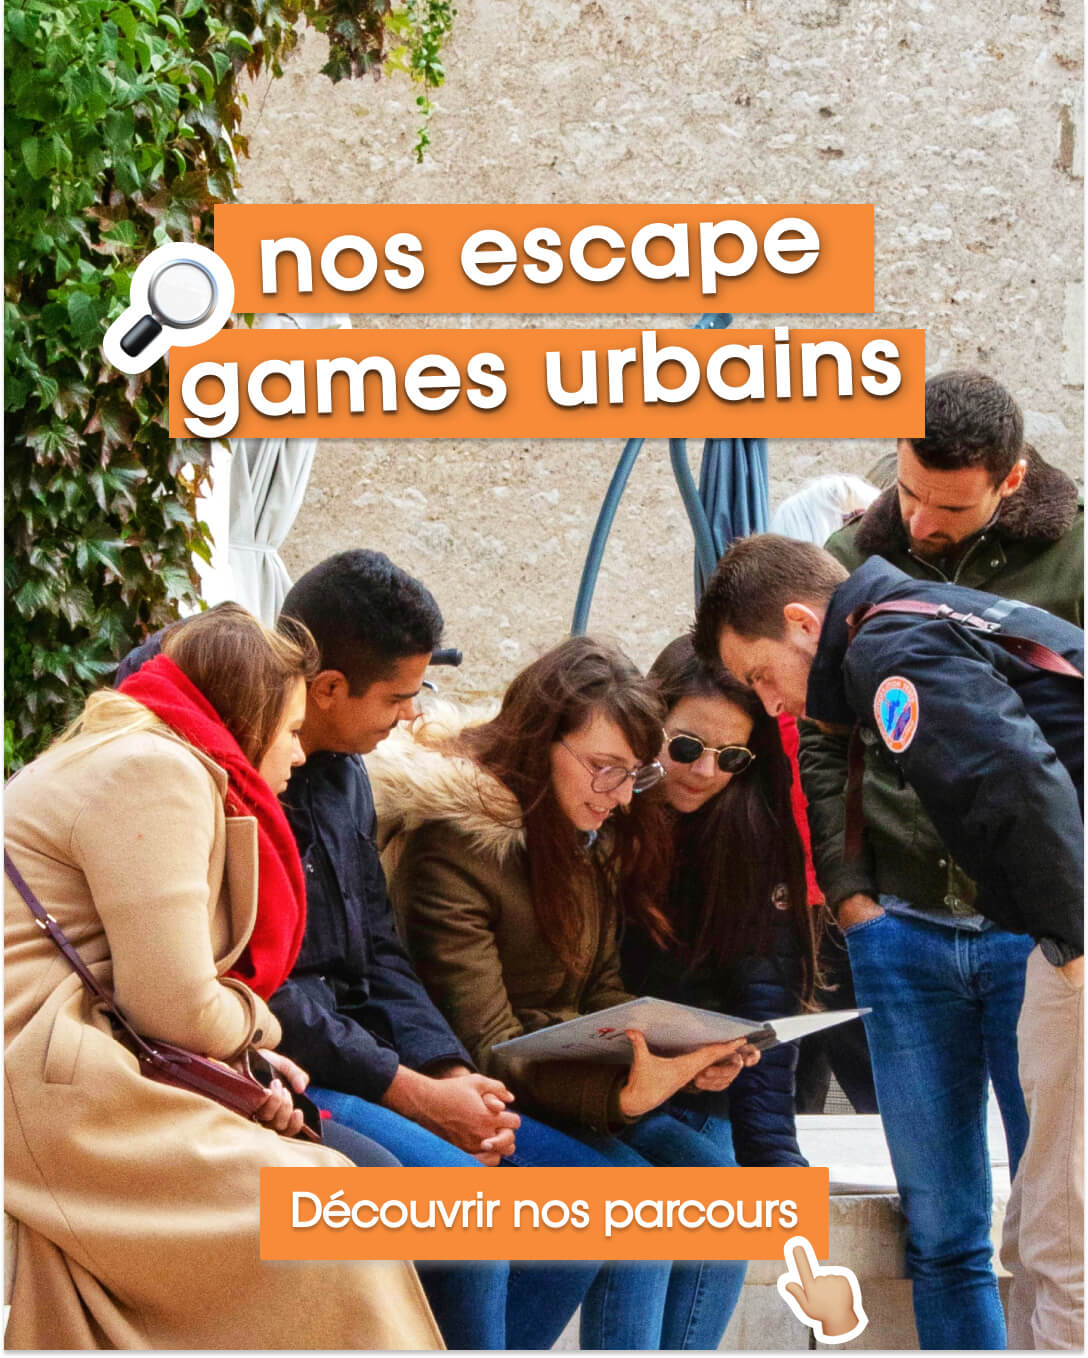 Cliquez sur l'image pour en savoir plus sur nos jeux de piste urbains façon escape game.